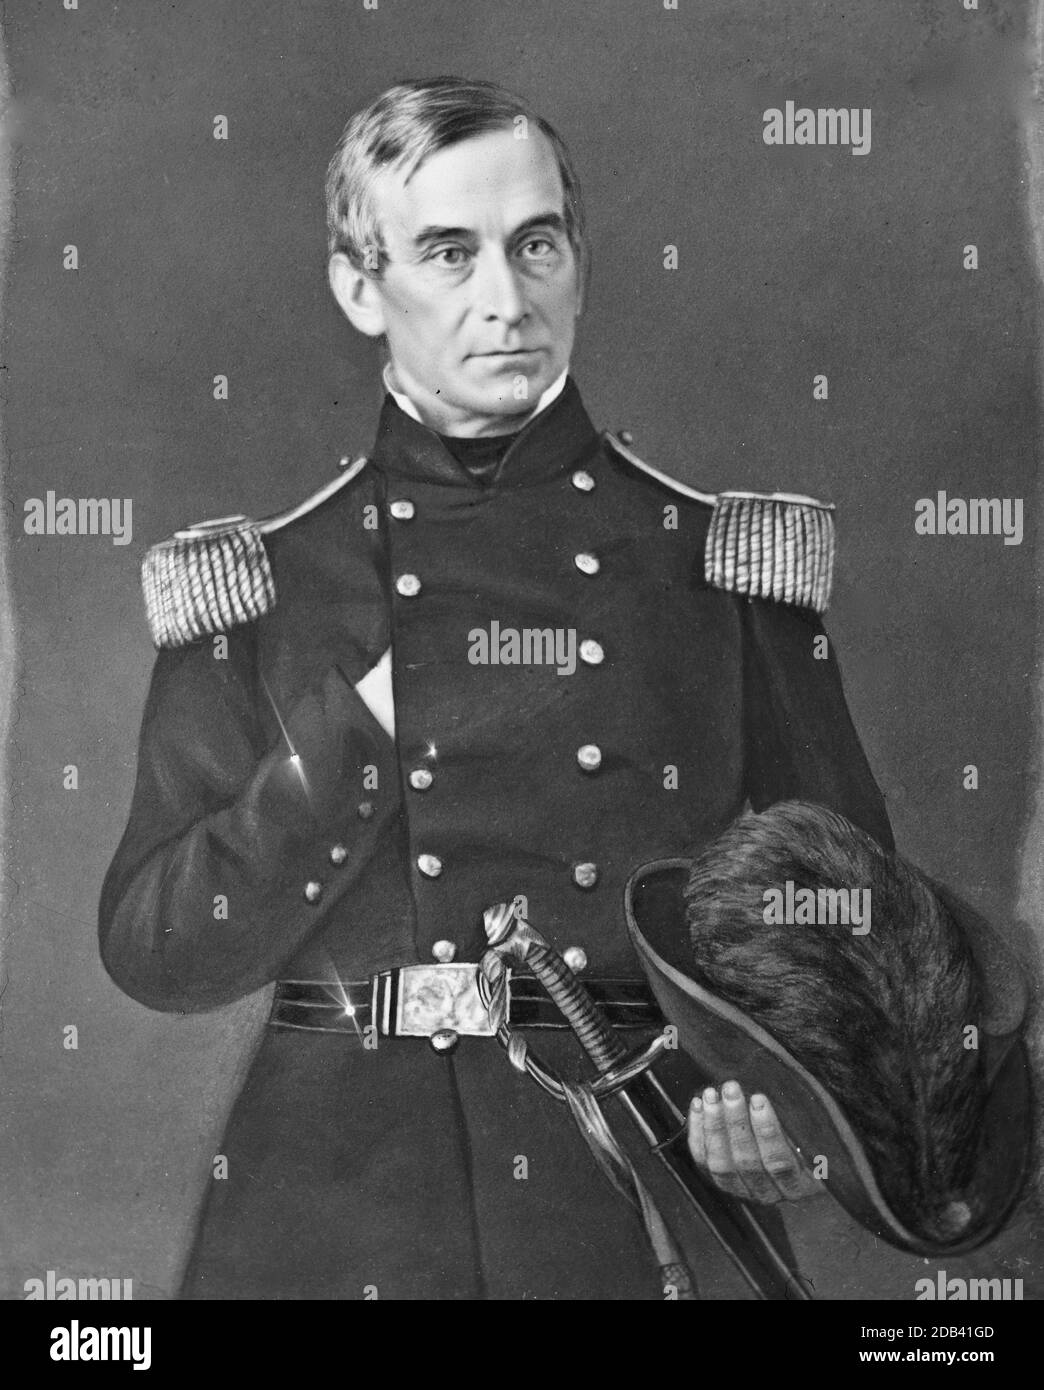 Porträt von Maj. Robert Anderson (Brig. Gen. vom 15. Mai 1861), Offizier der Bundeswehr. Stockfoto